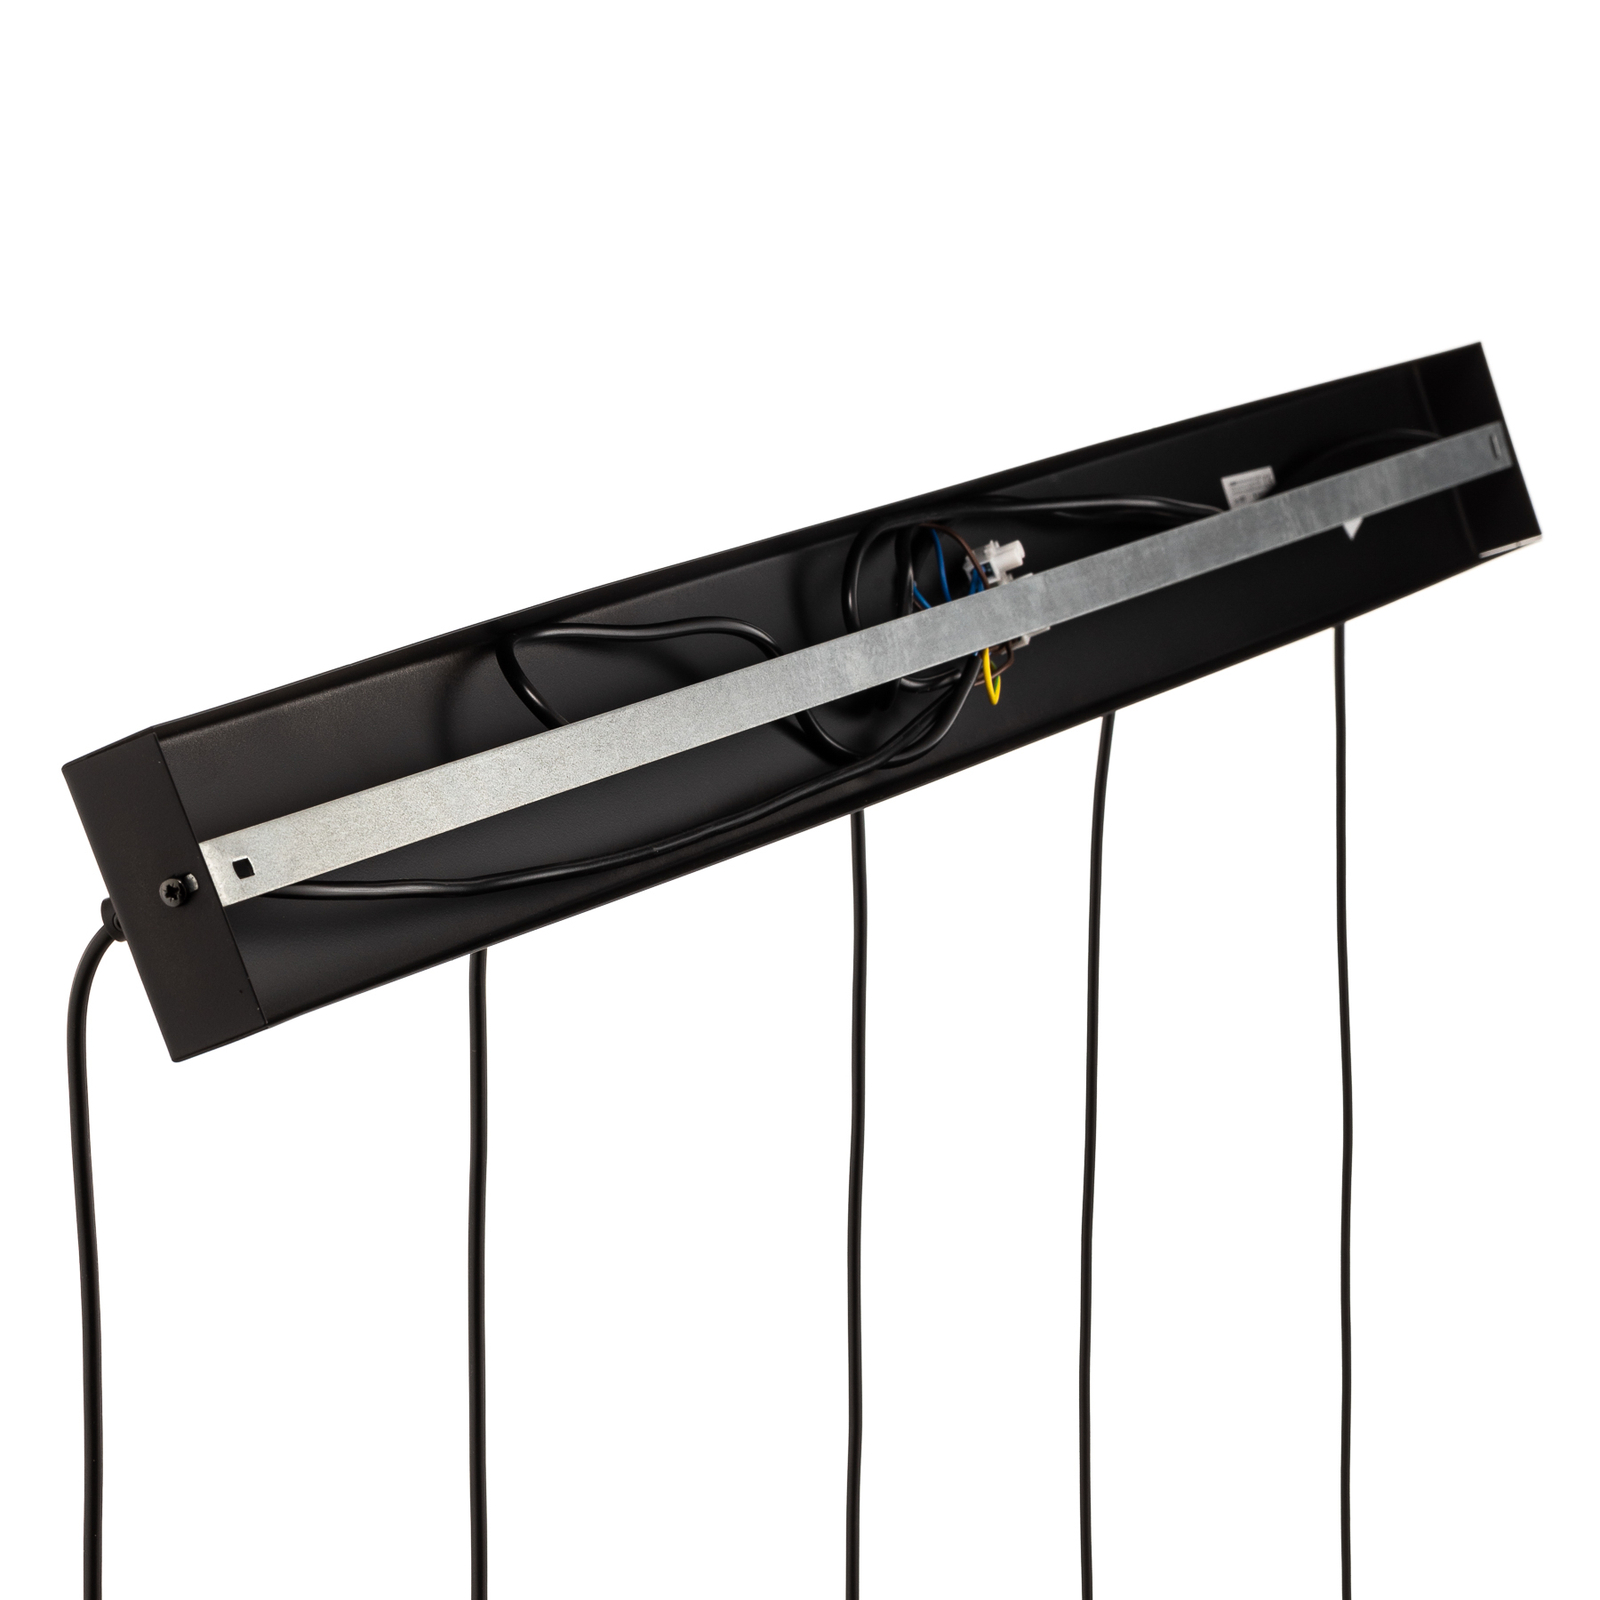 Hanglamp Nanu met hout lang 5-lamps zwart